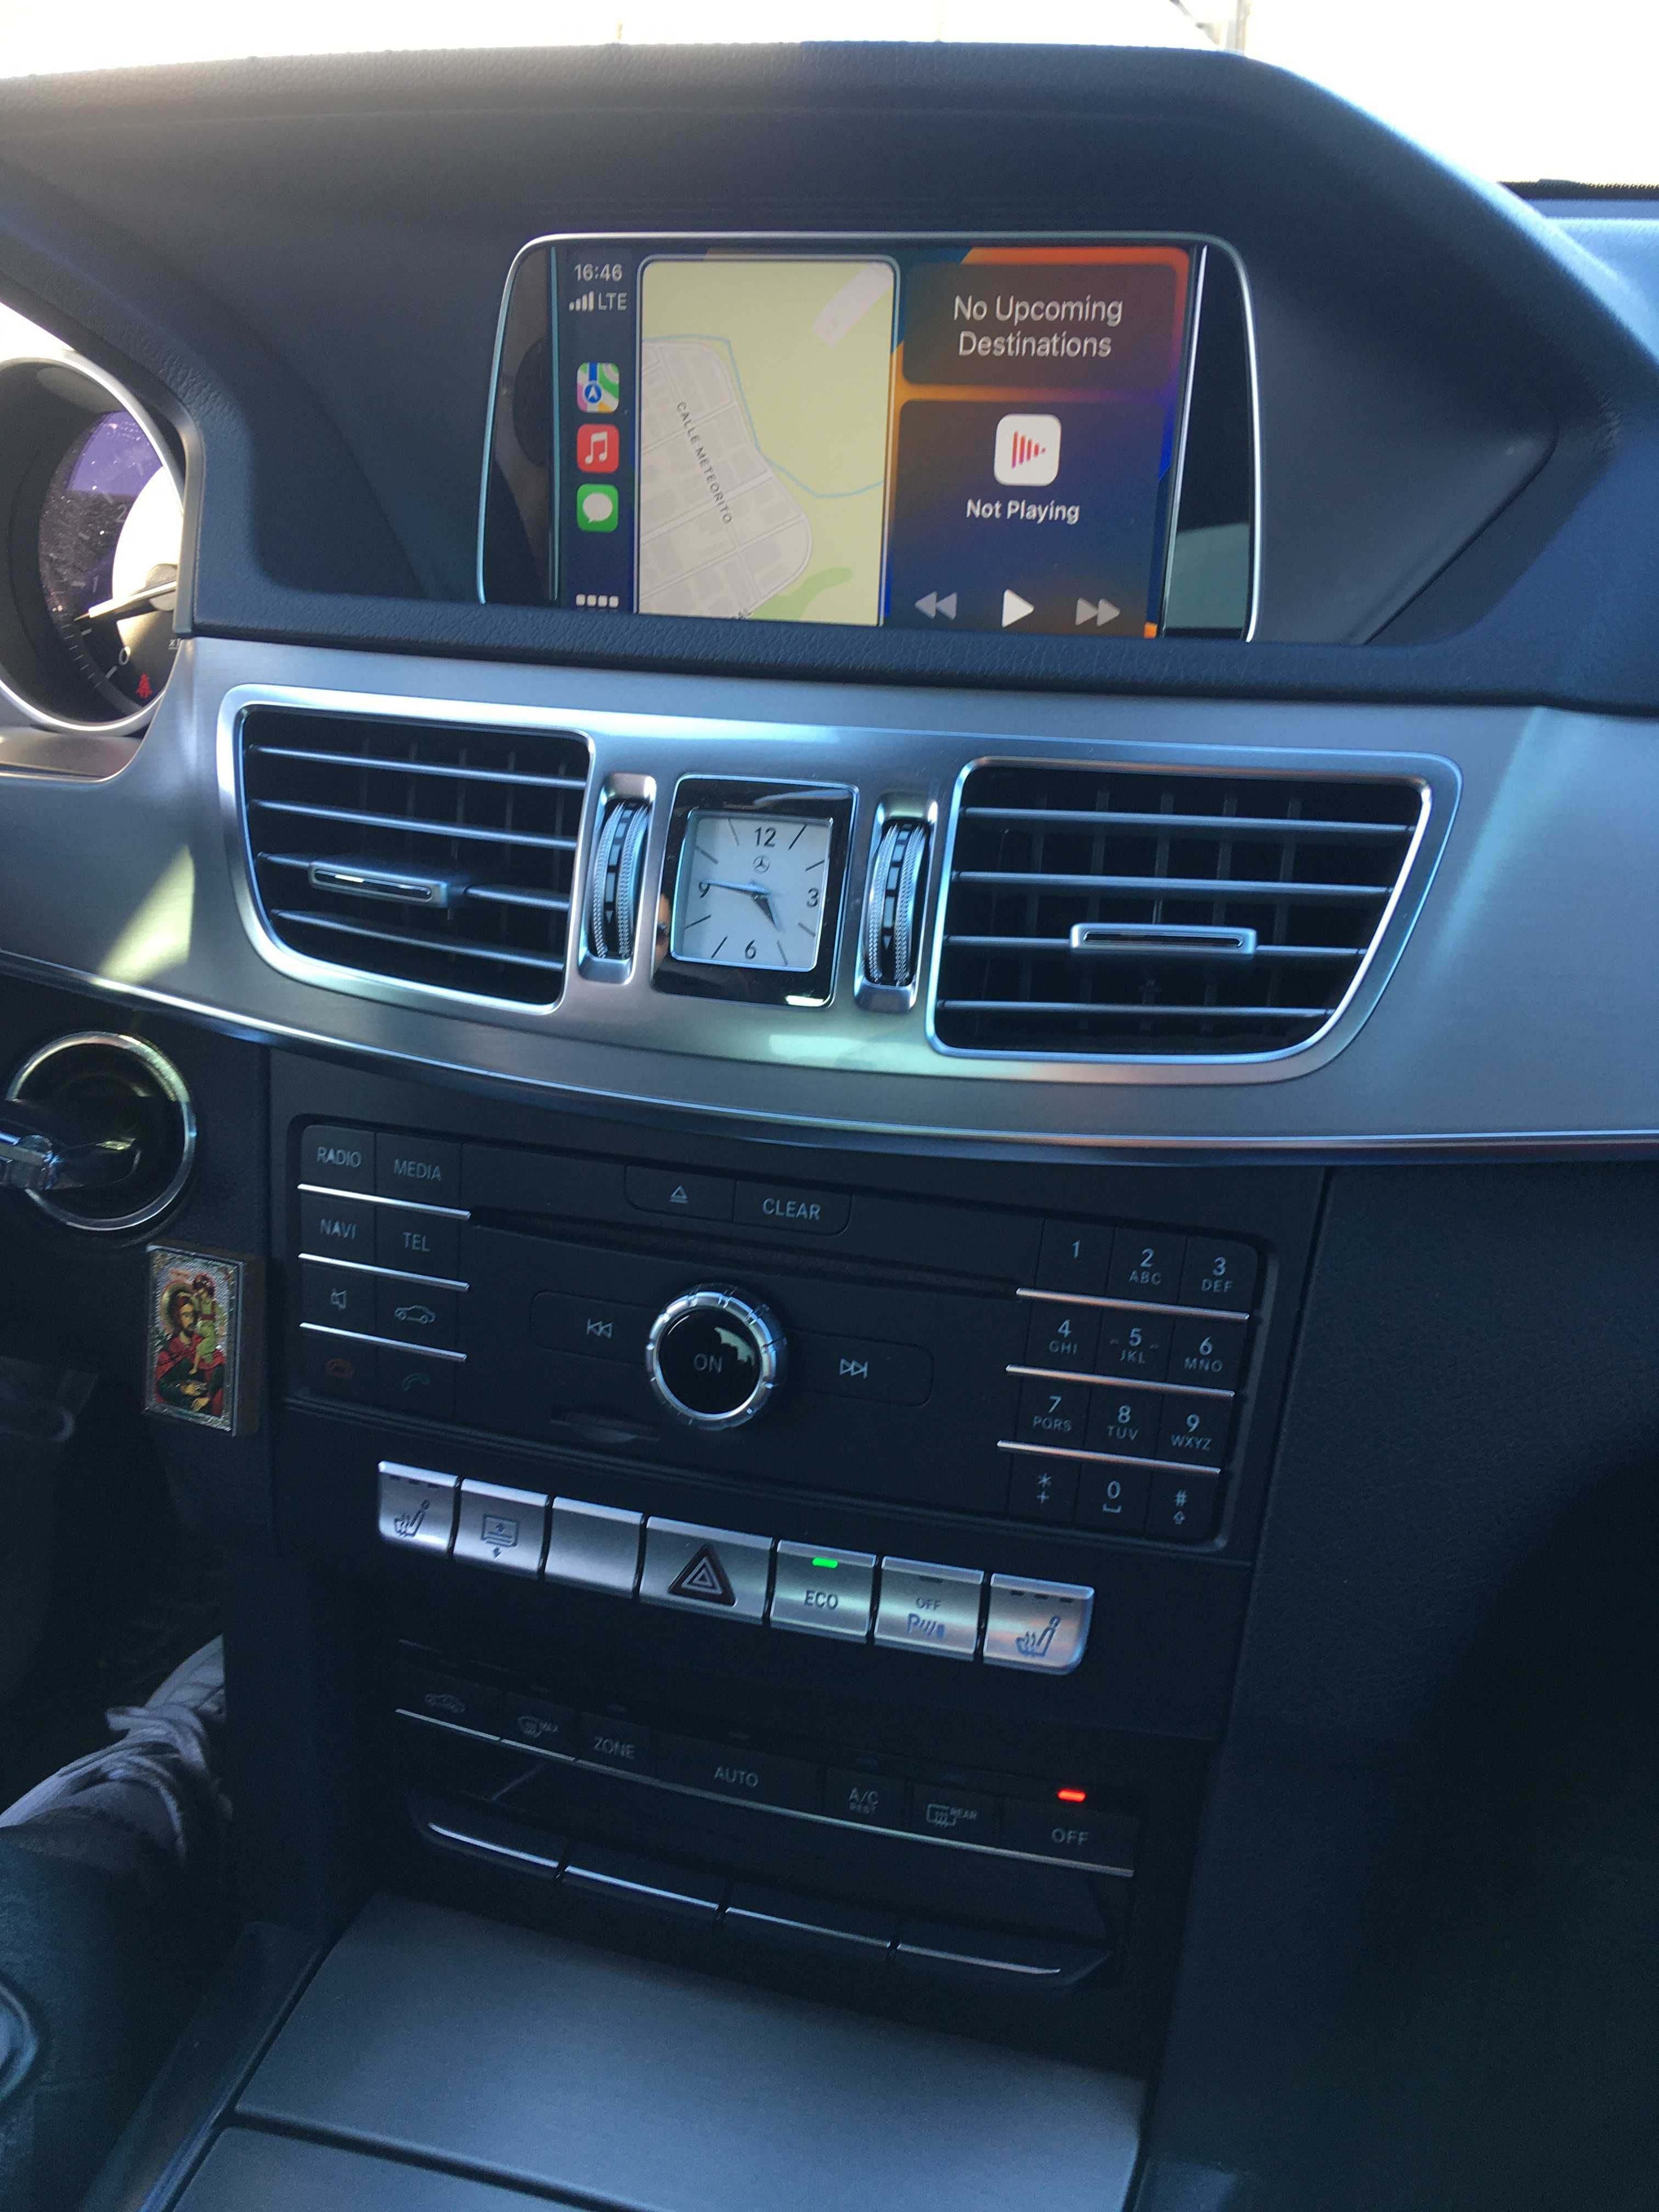 Mercedes Активиране на Android Auto Отключване Apple CarPlay Ъпдейт